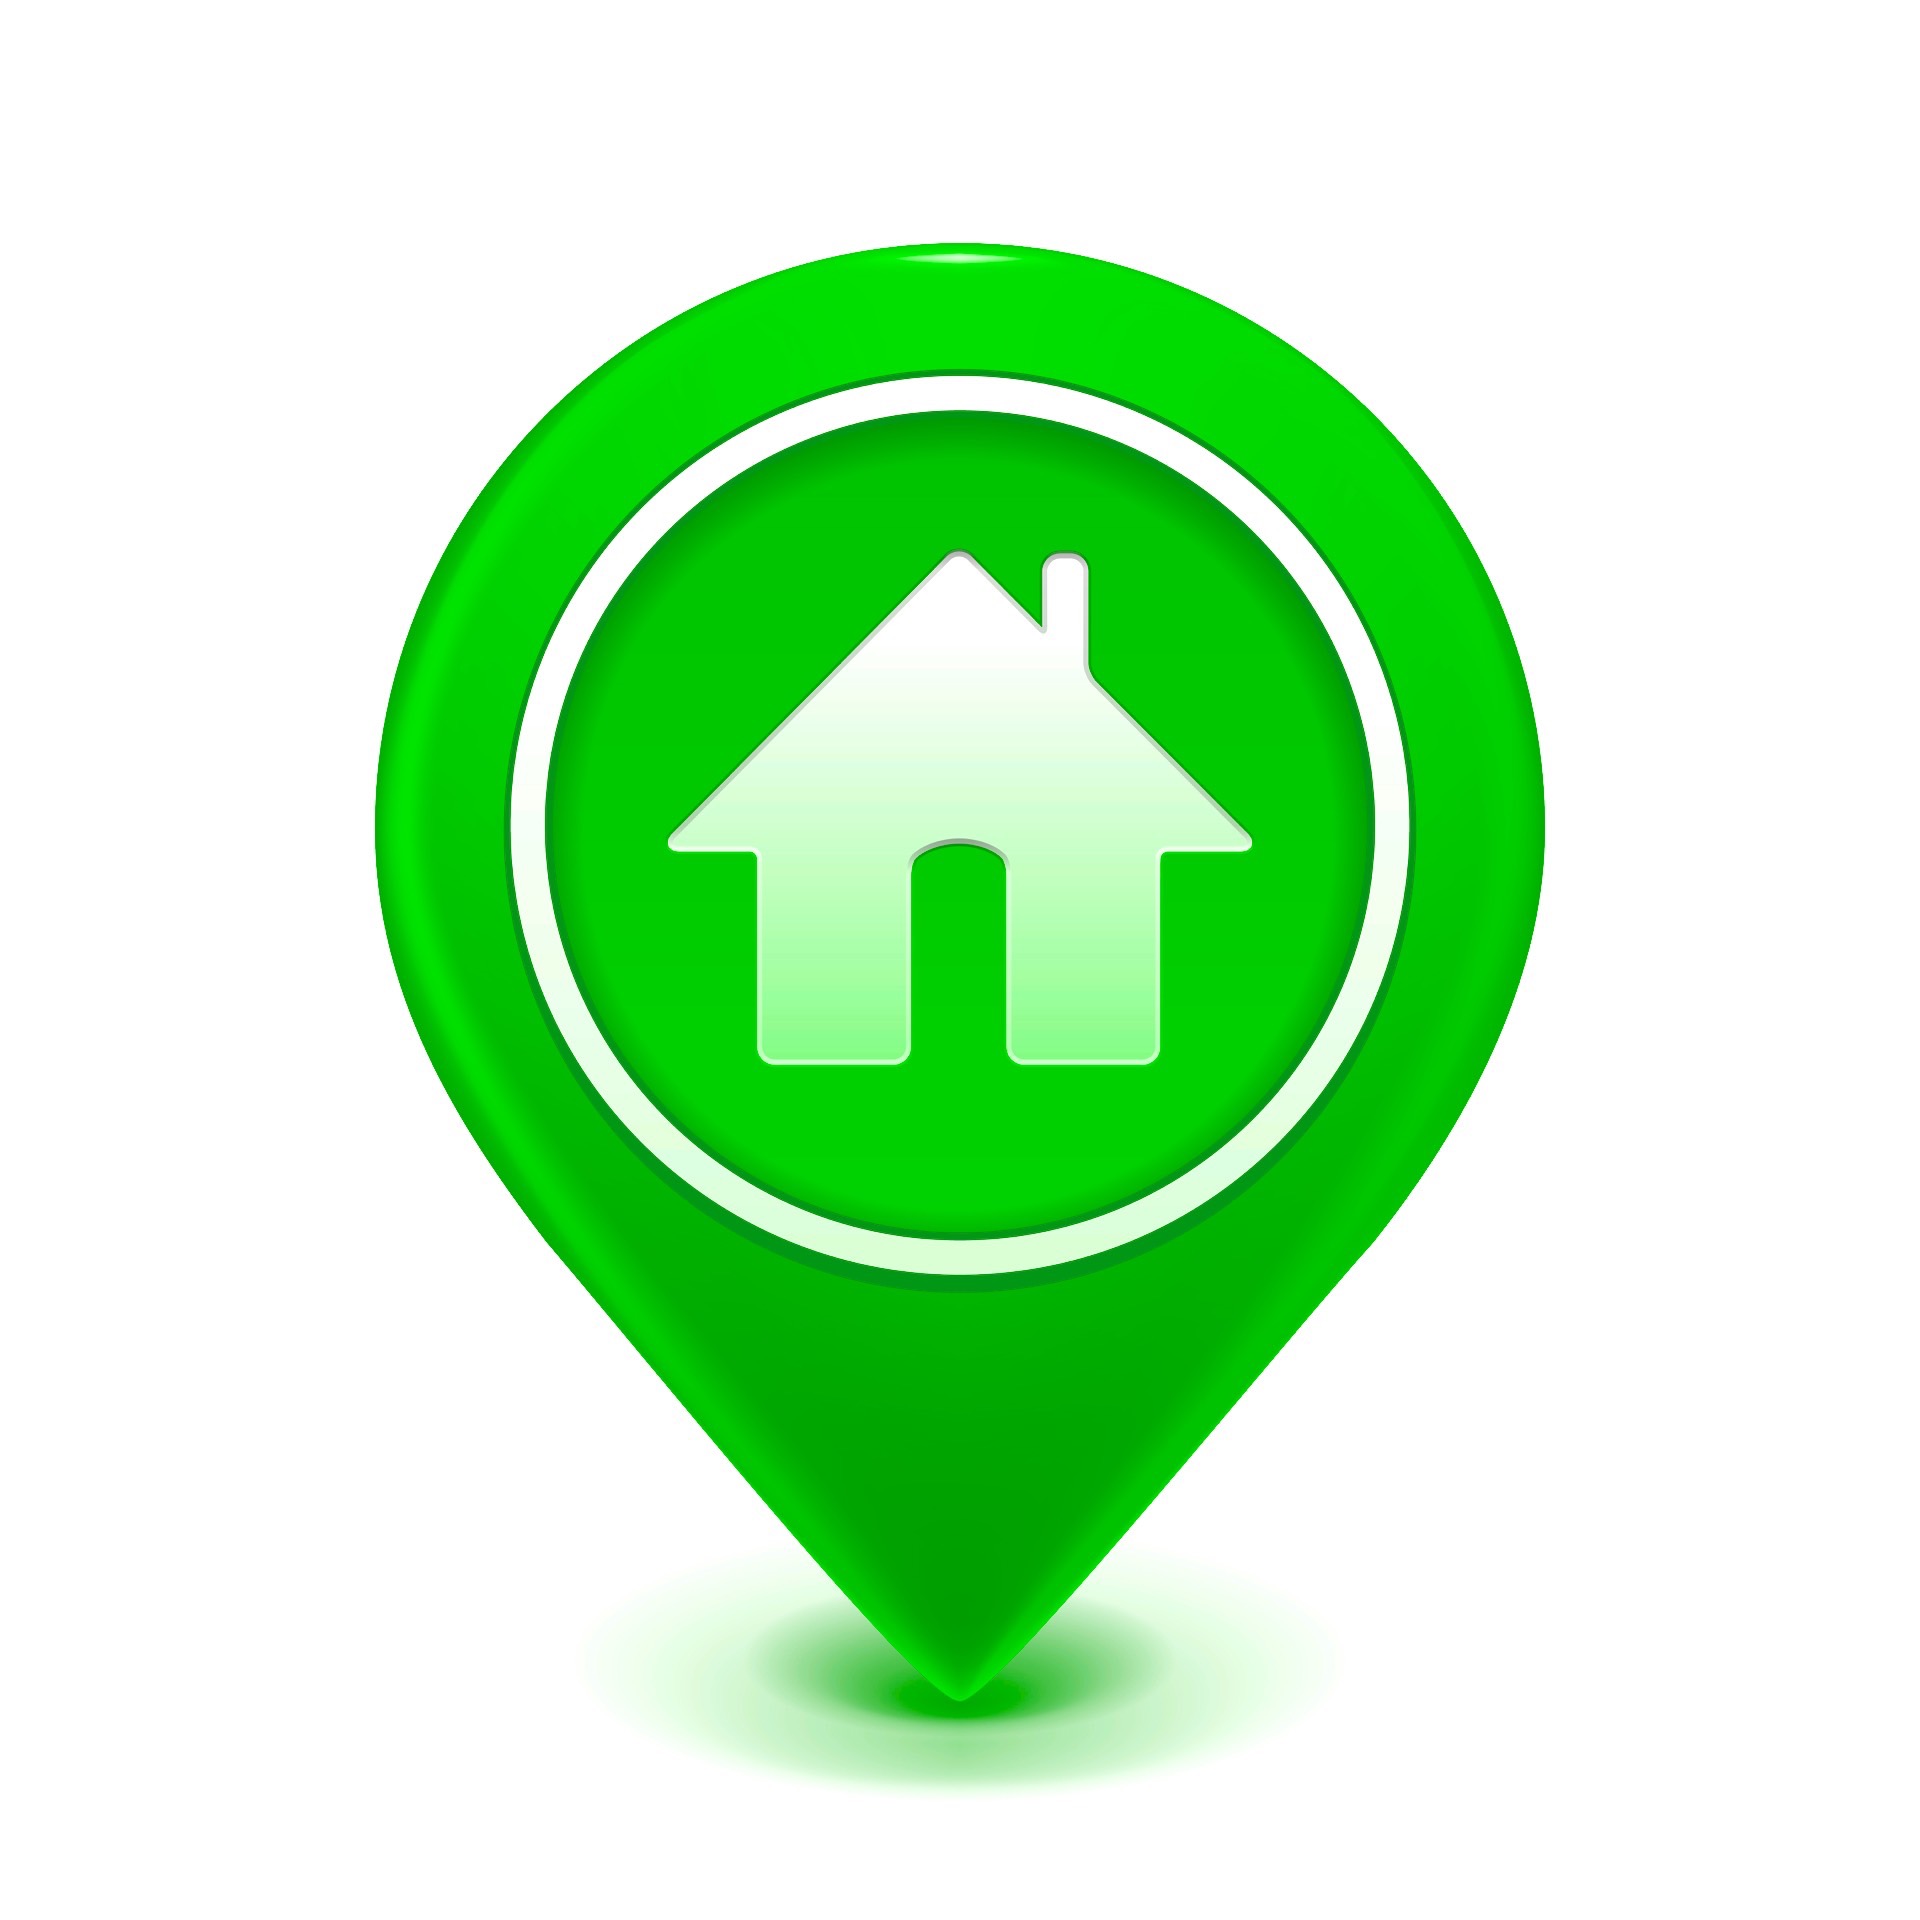 Investovať, dom v krúžku a zelenej kvapke ukazujúci cieľ